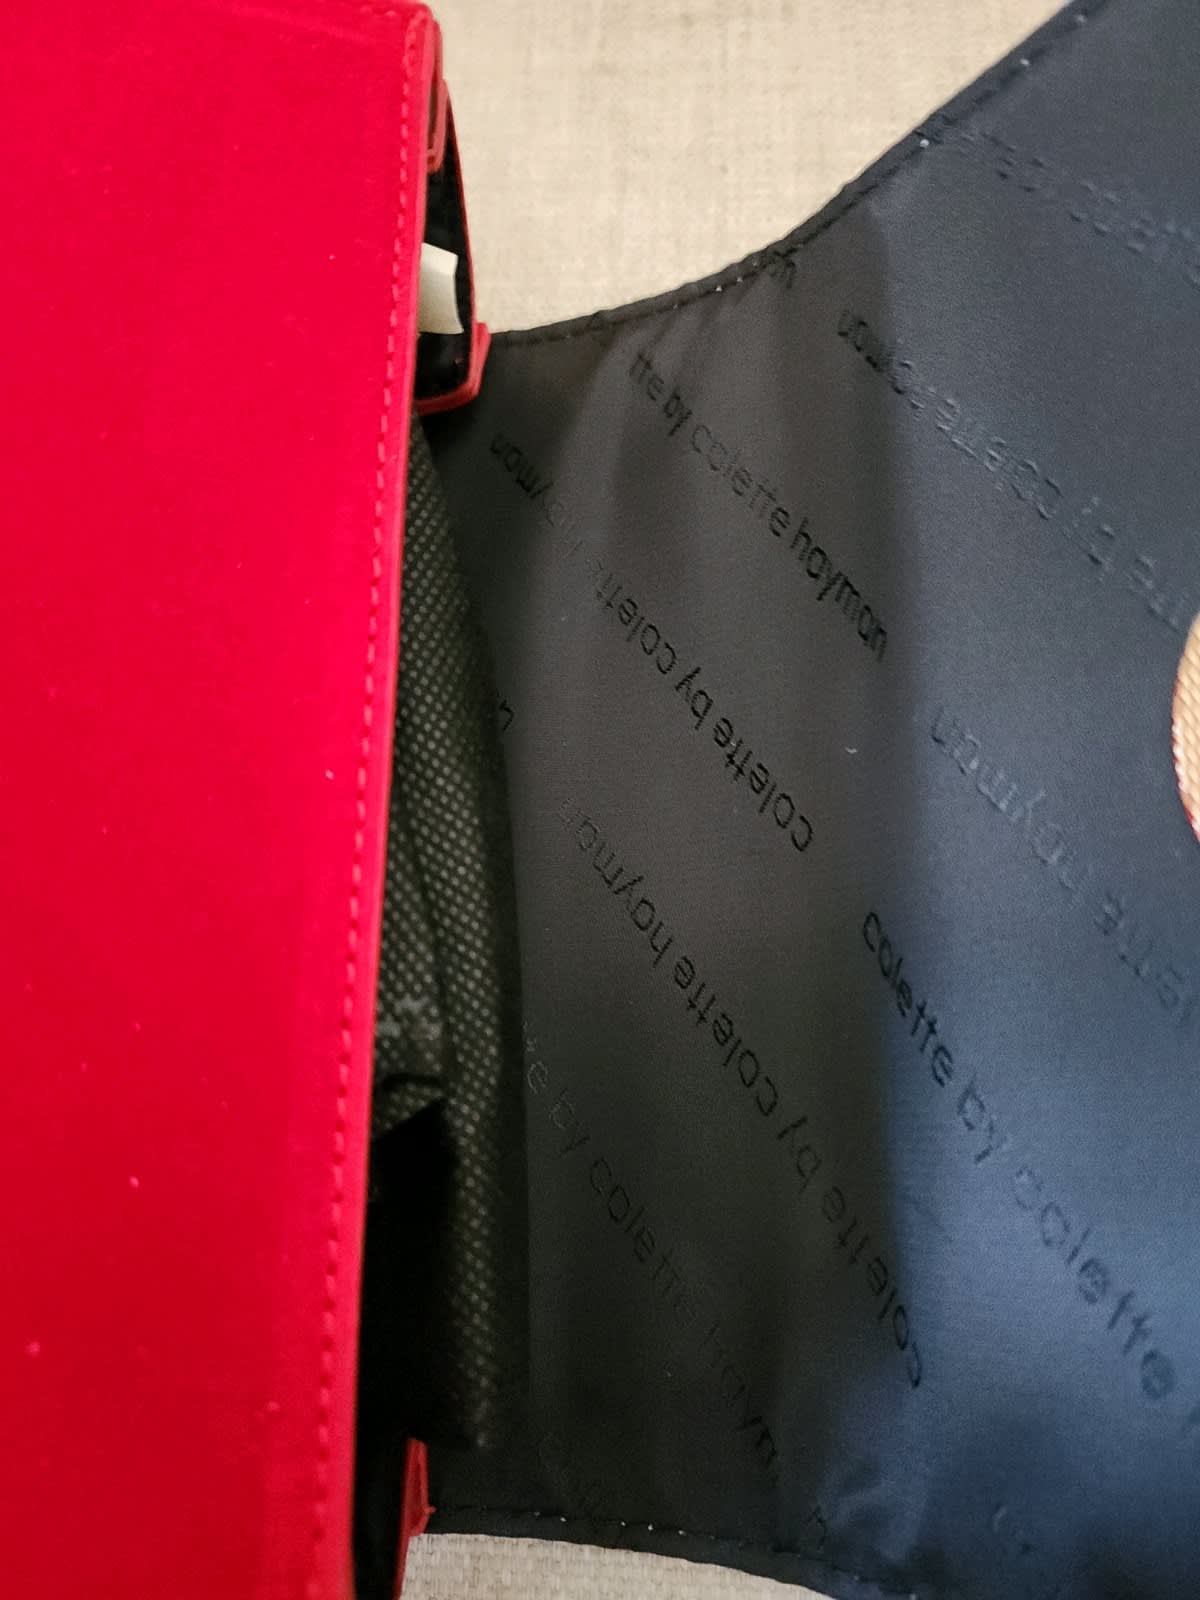 Brand new Louis Vuitton speedy 20 in monogram jacquard strap, Bags, Gumtree Australia Gosford Area - Gosford